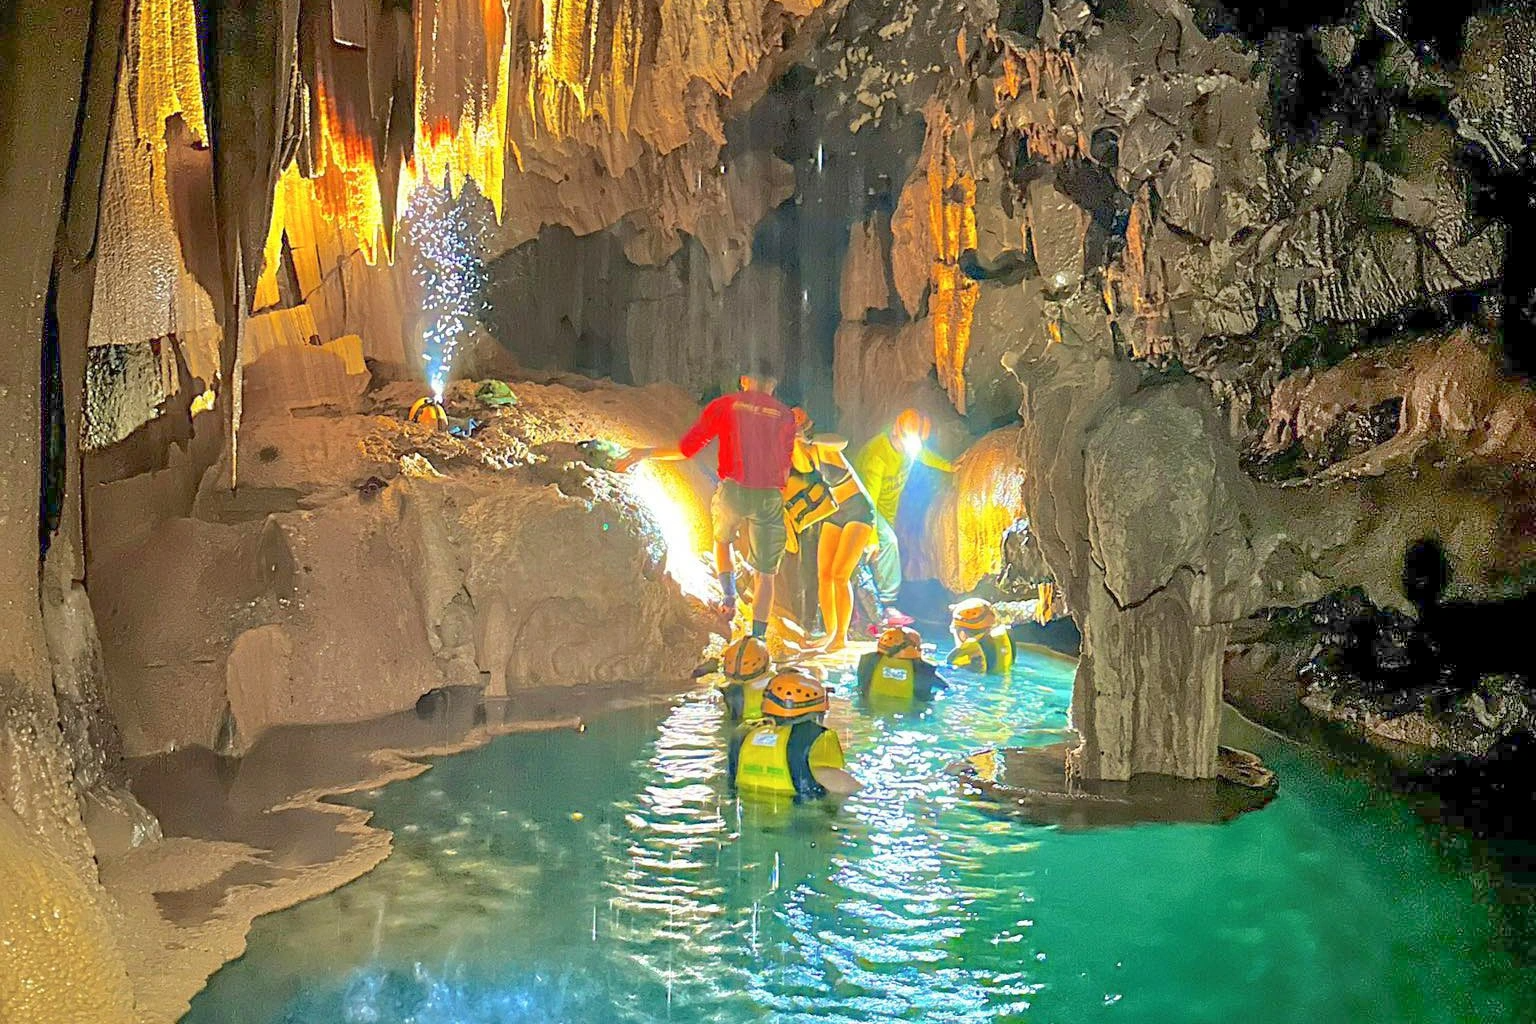 Vẻ đẹp siêu thực trong hang động có hồ nước bí ẩn treo lơ lửng - 1